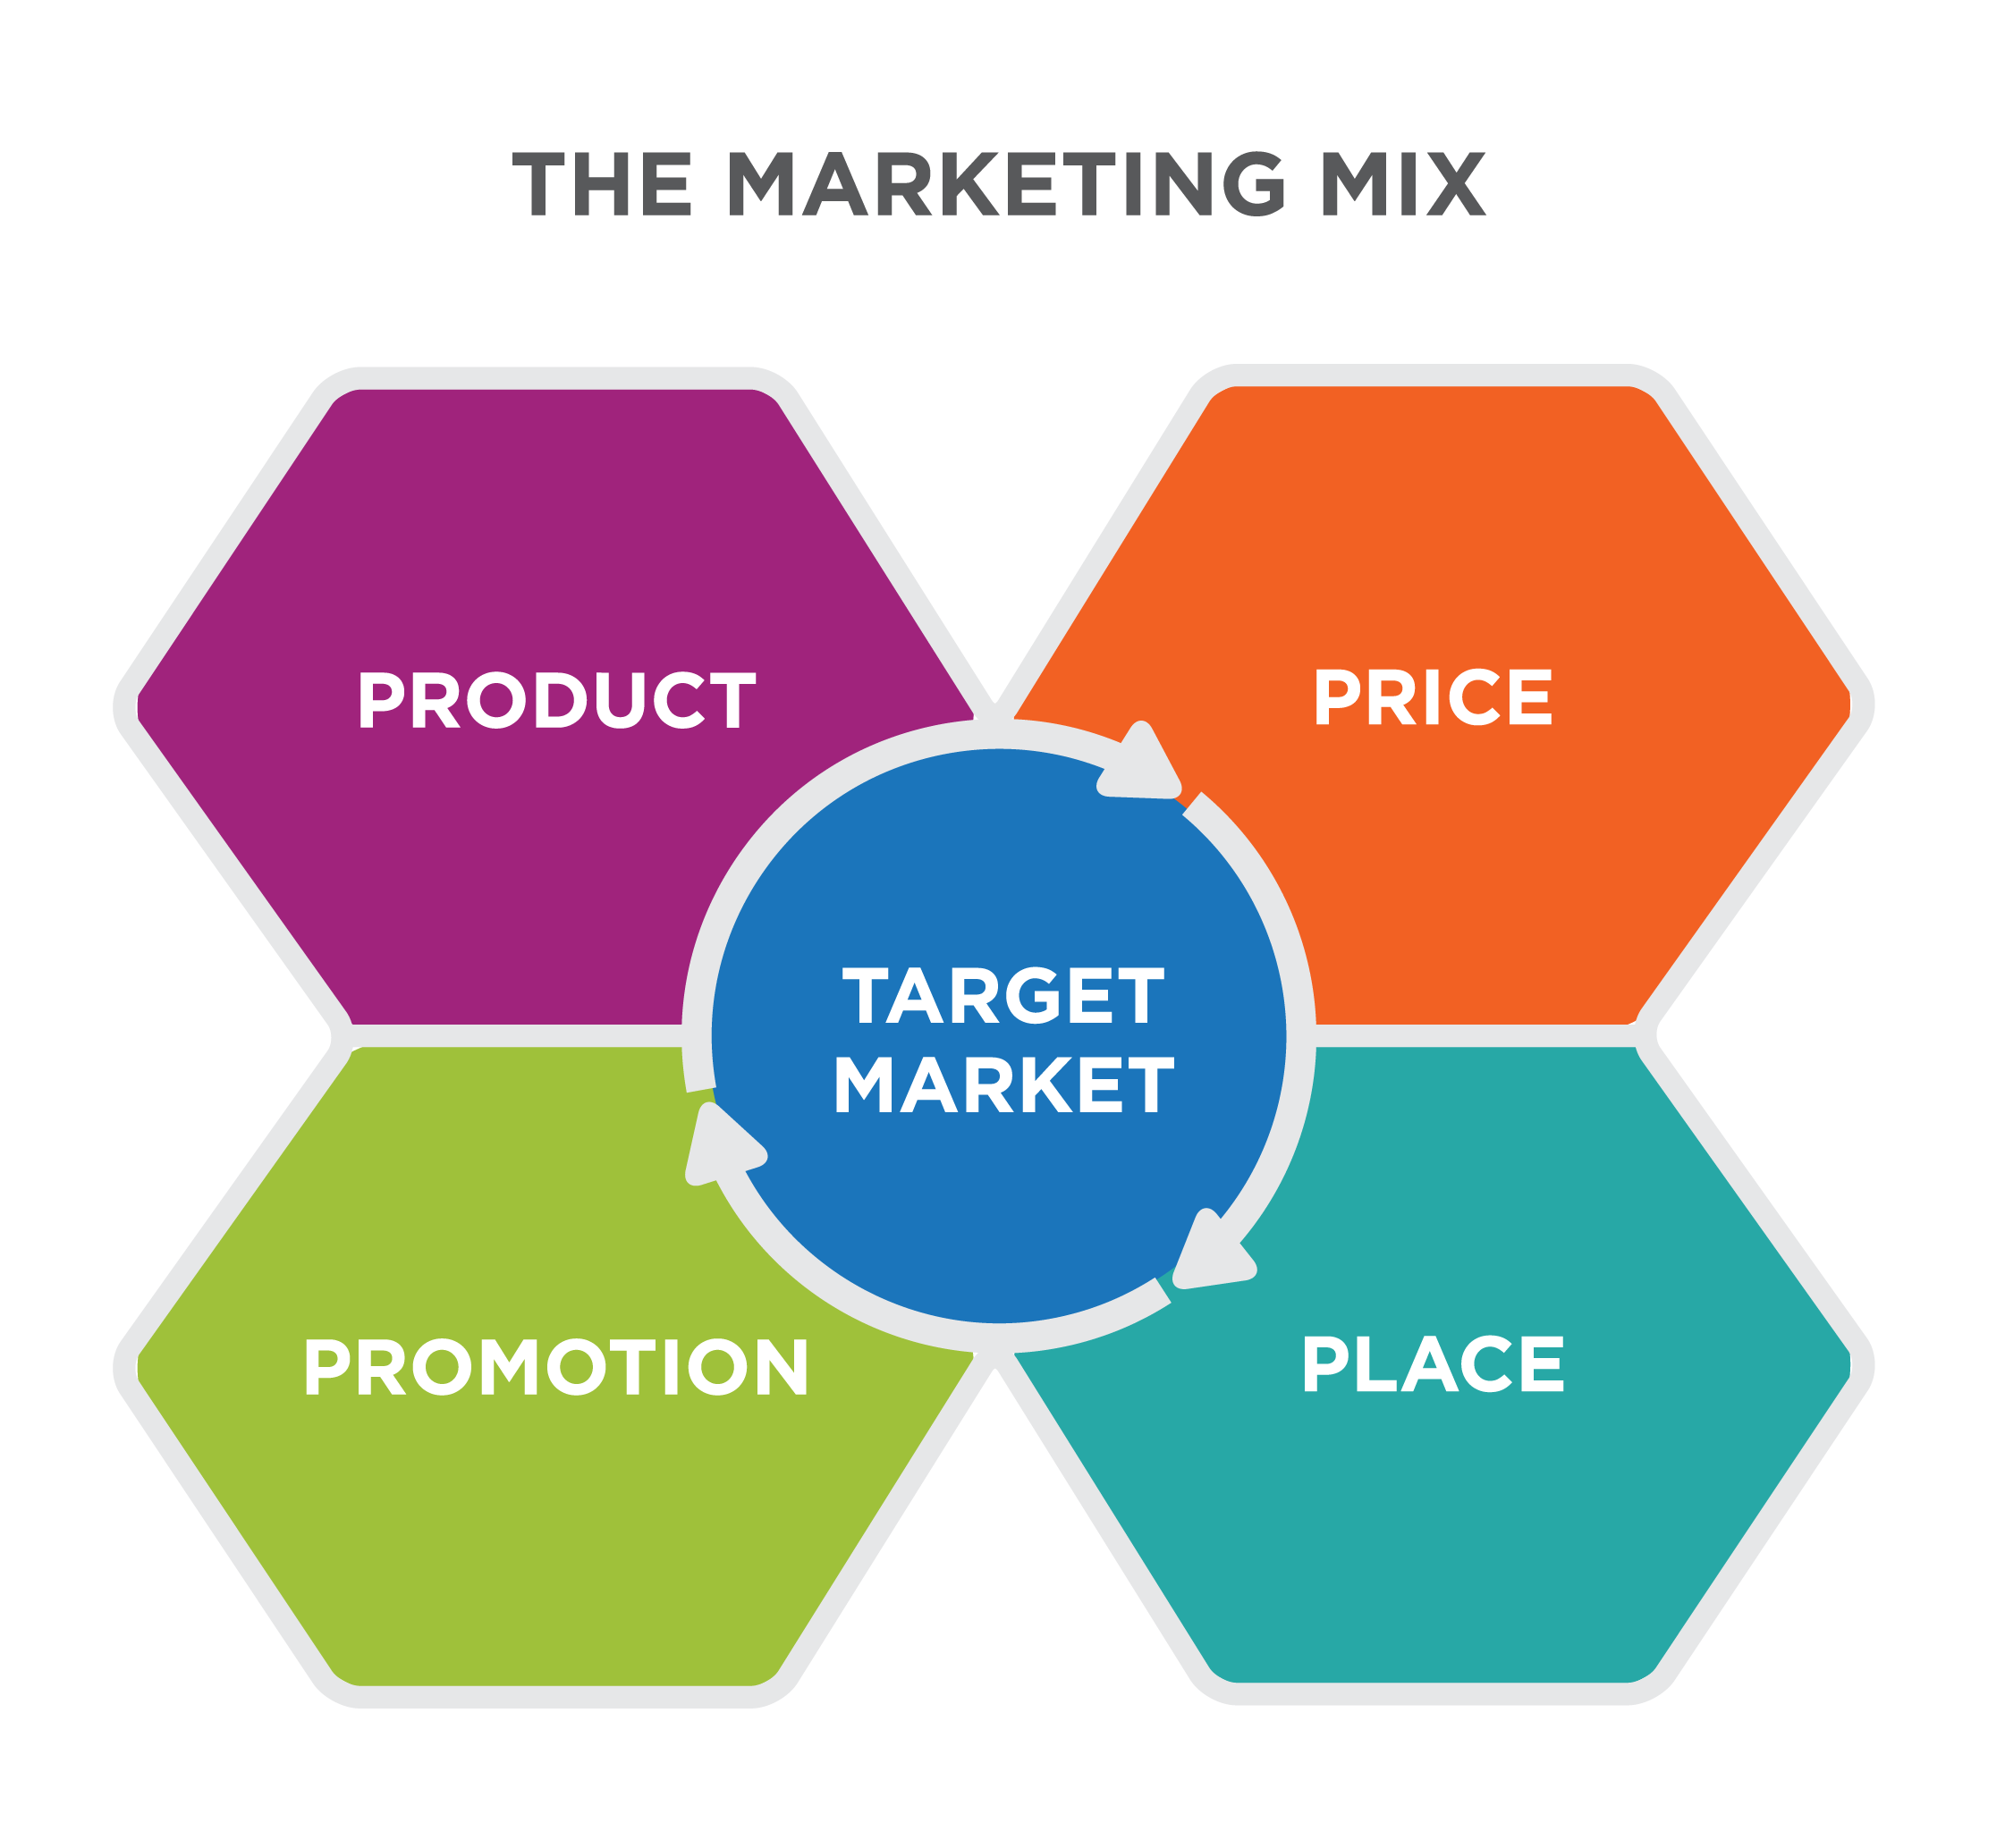 Un mapa mental de la mezcla de marketing, donde el mercado objetivo está rodeado por las 4 P's: Producto, Precio, Promoción y Lugar.